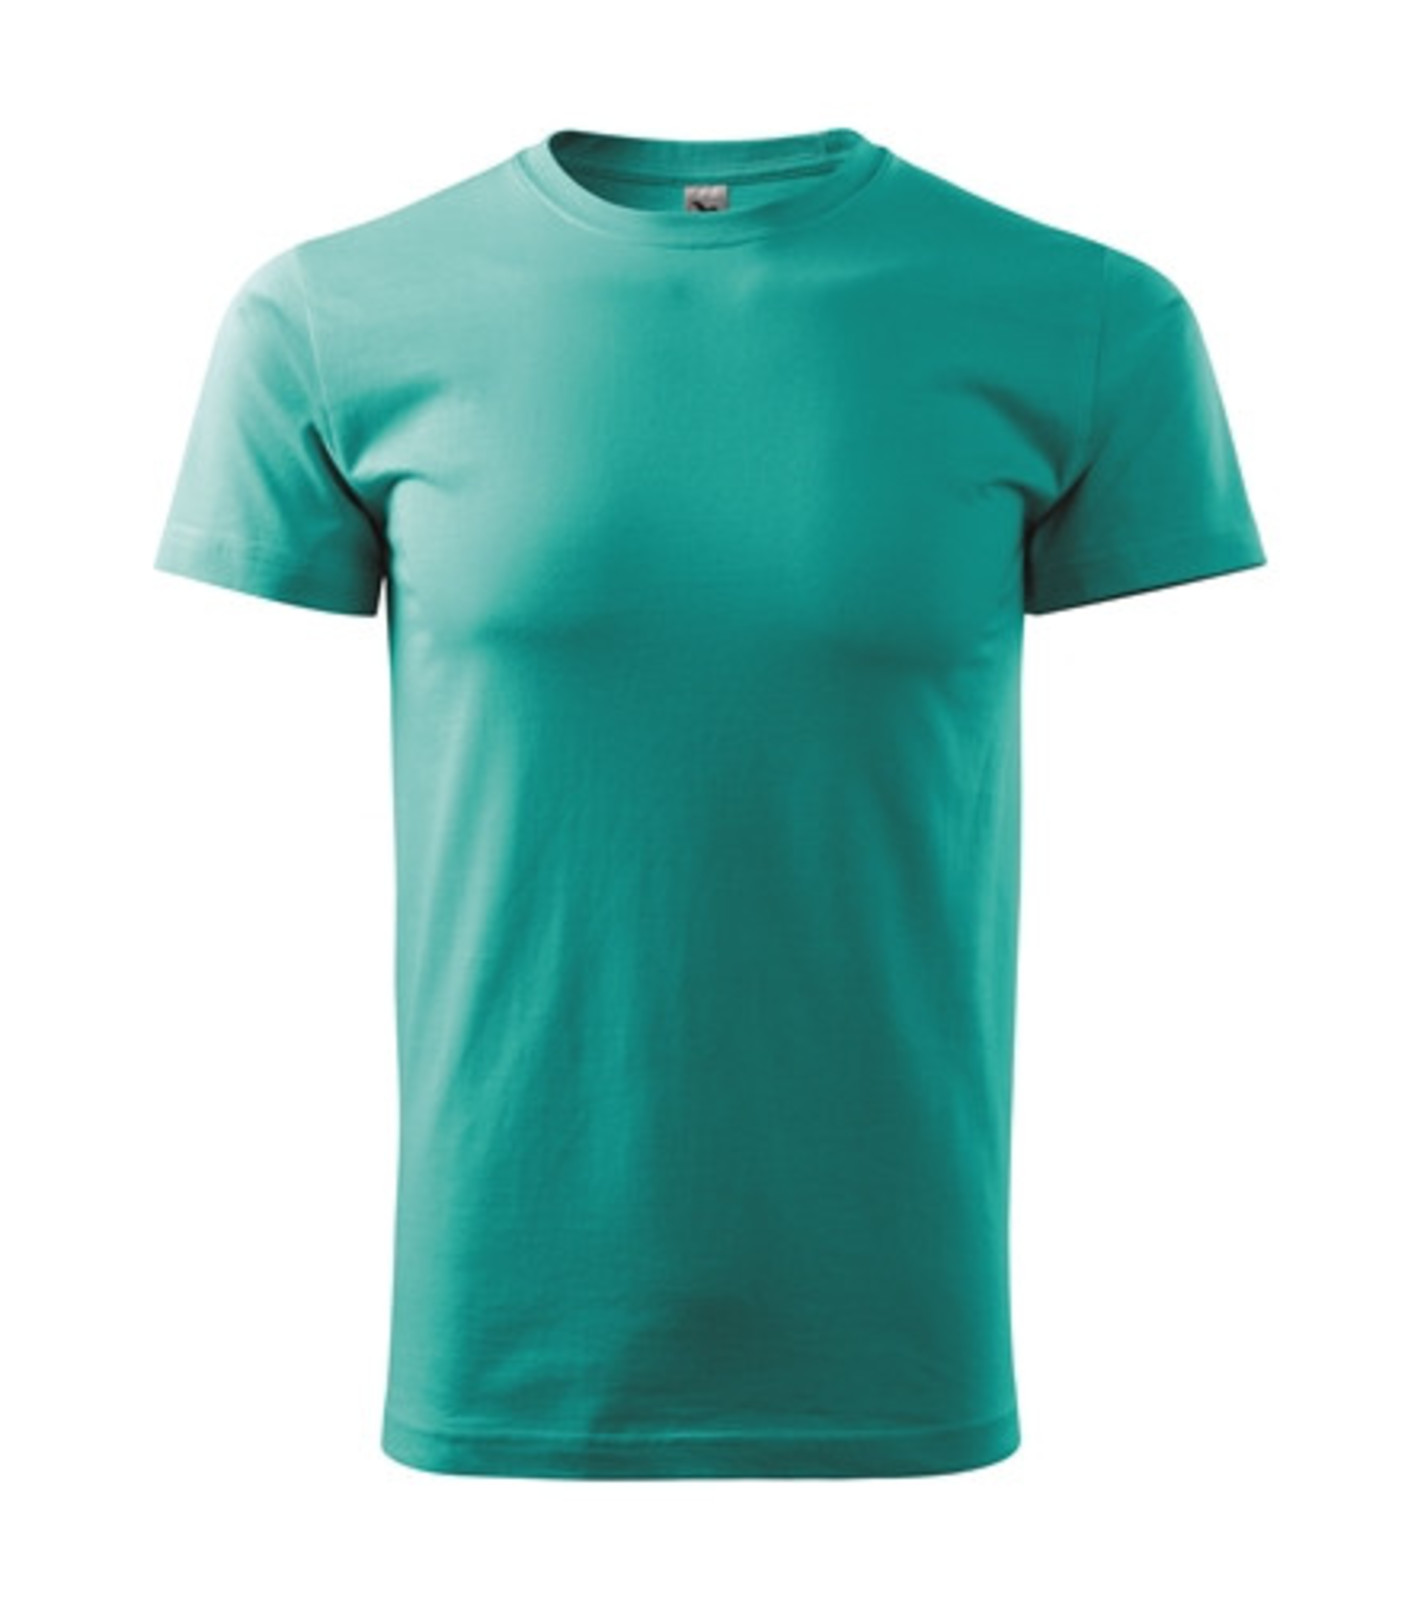 Pánske tričko Malfini Basic 129 - veľkosť: 3XL, farba: zelená smaragdová